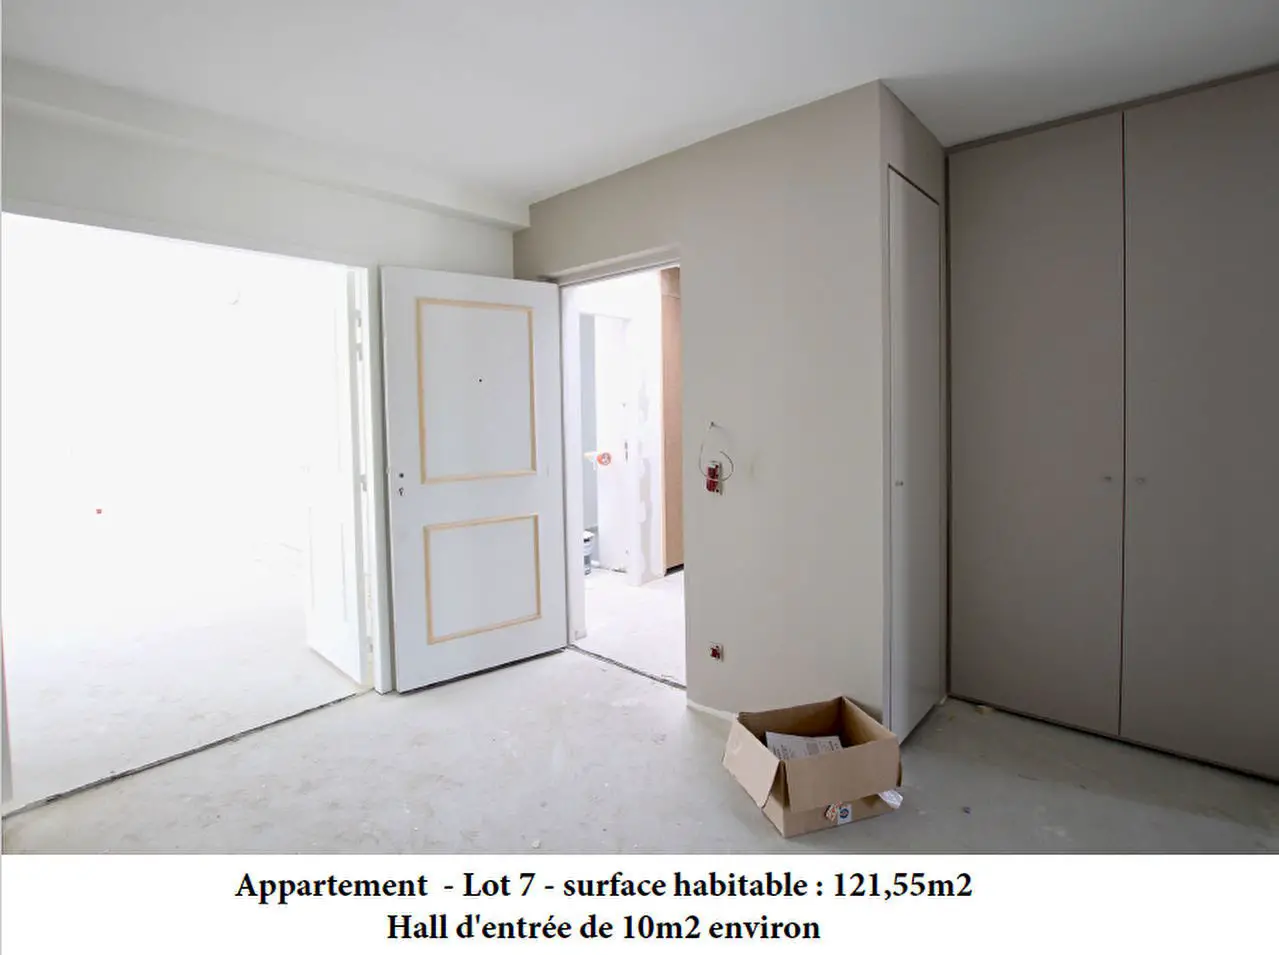 Vente appartement 4 pièces 121,55 m2